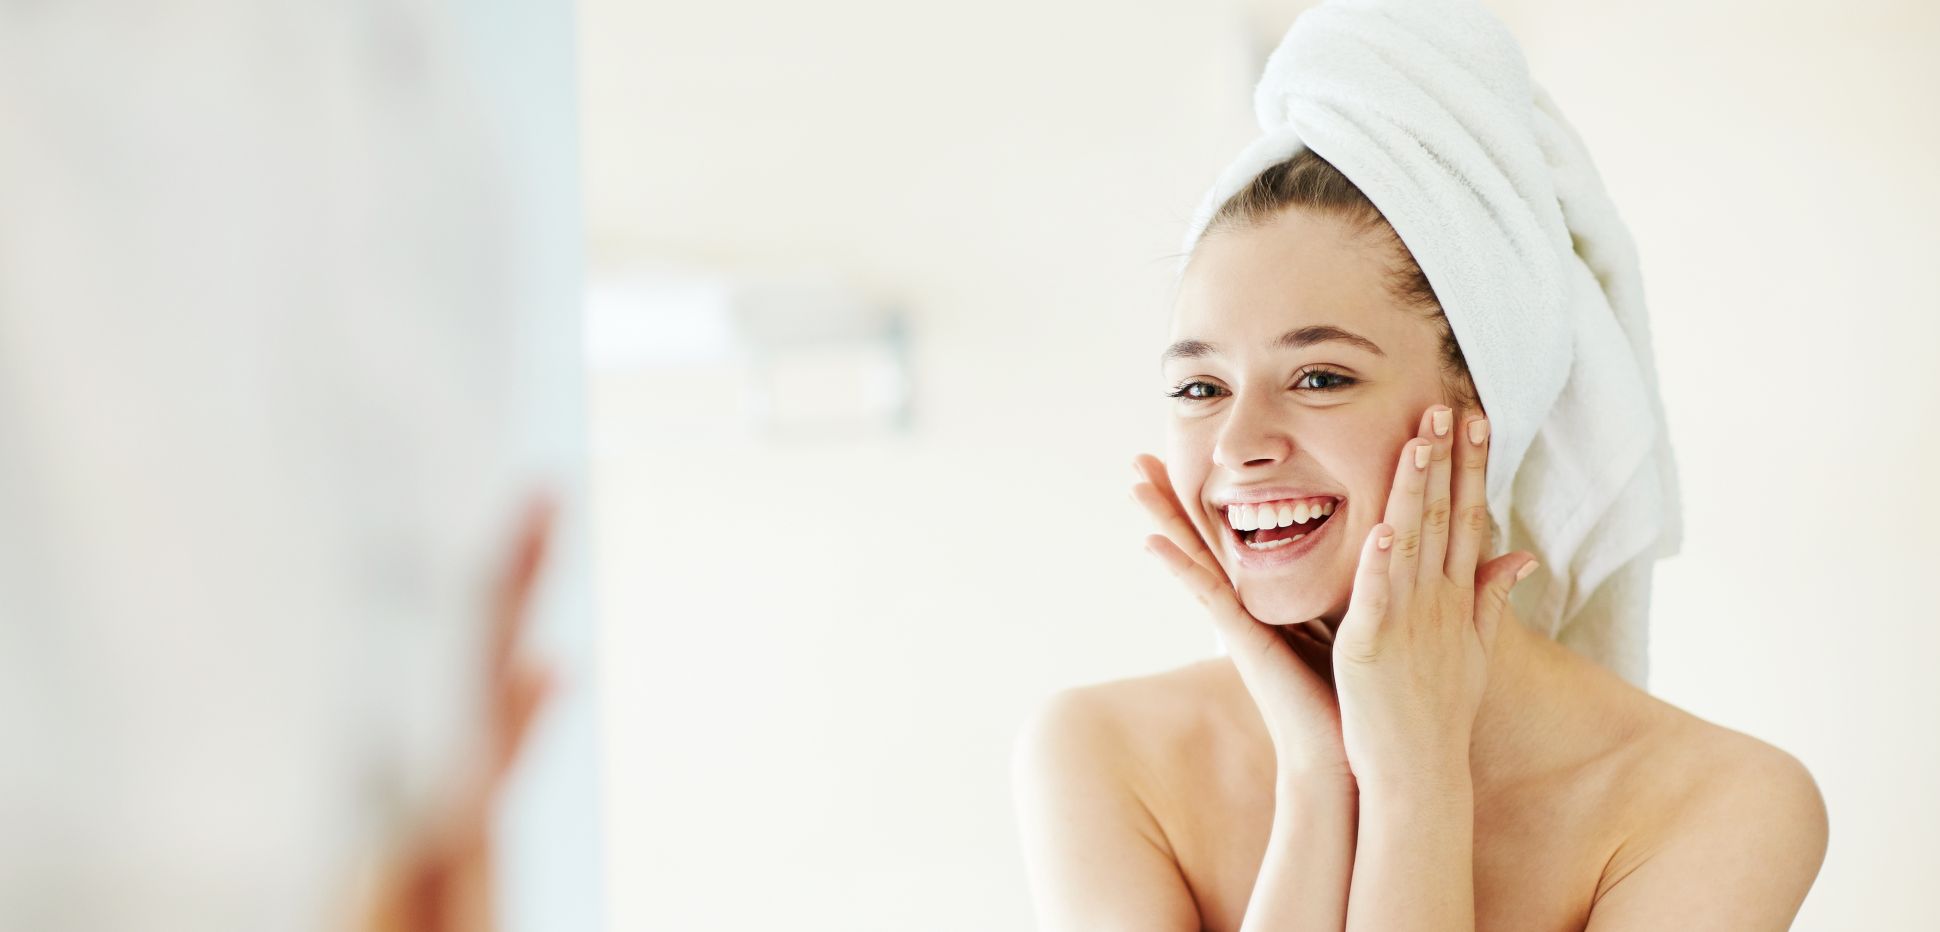 Poren Verfeinern Erfahren Sie 3 Hausmittel Gegen Grosse Poren